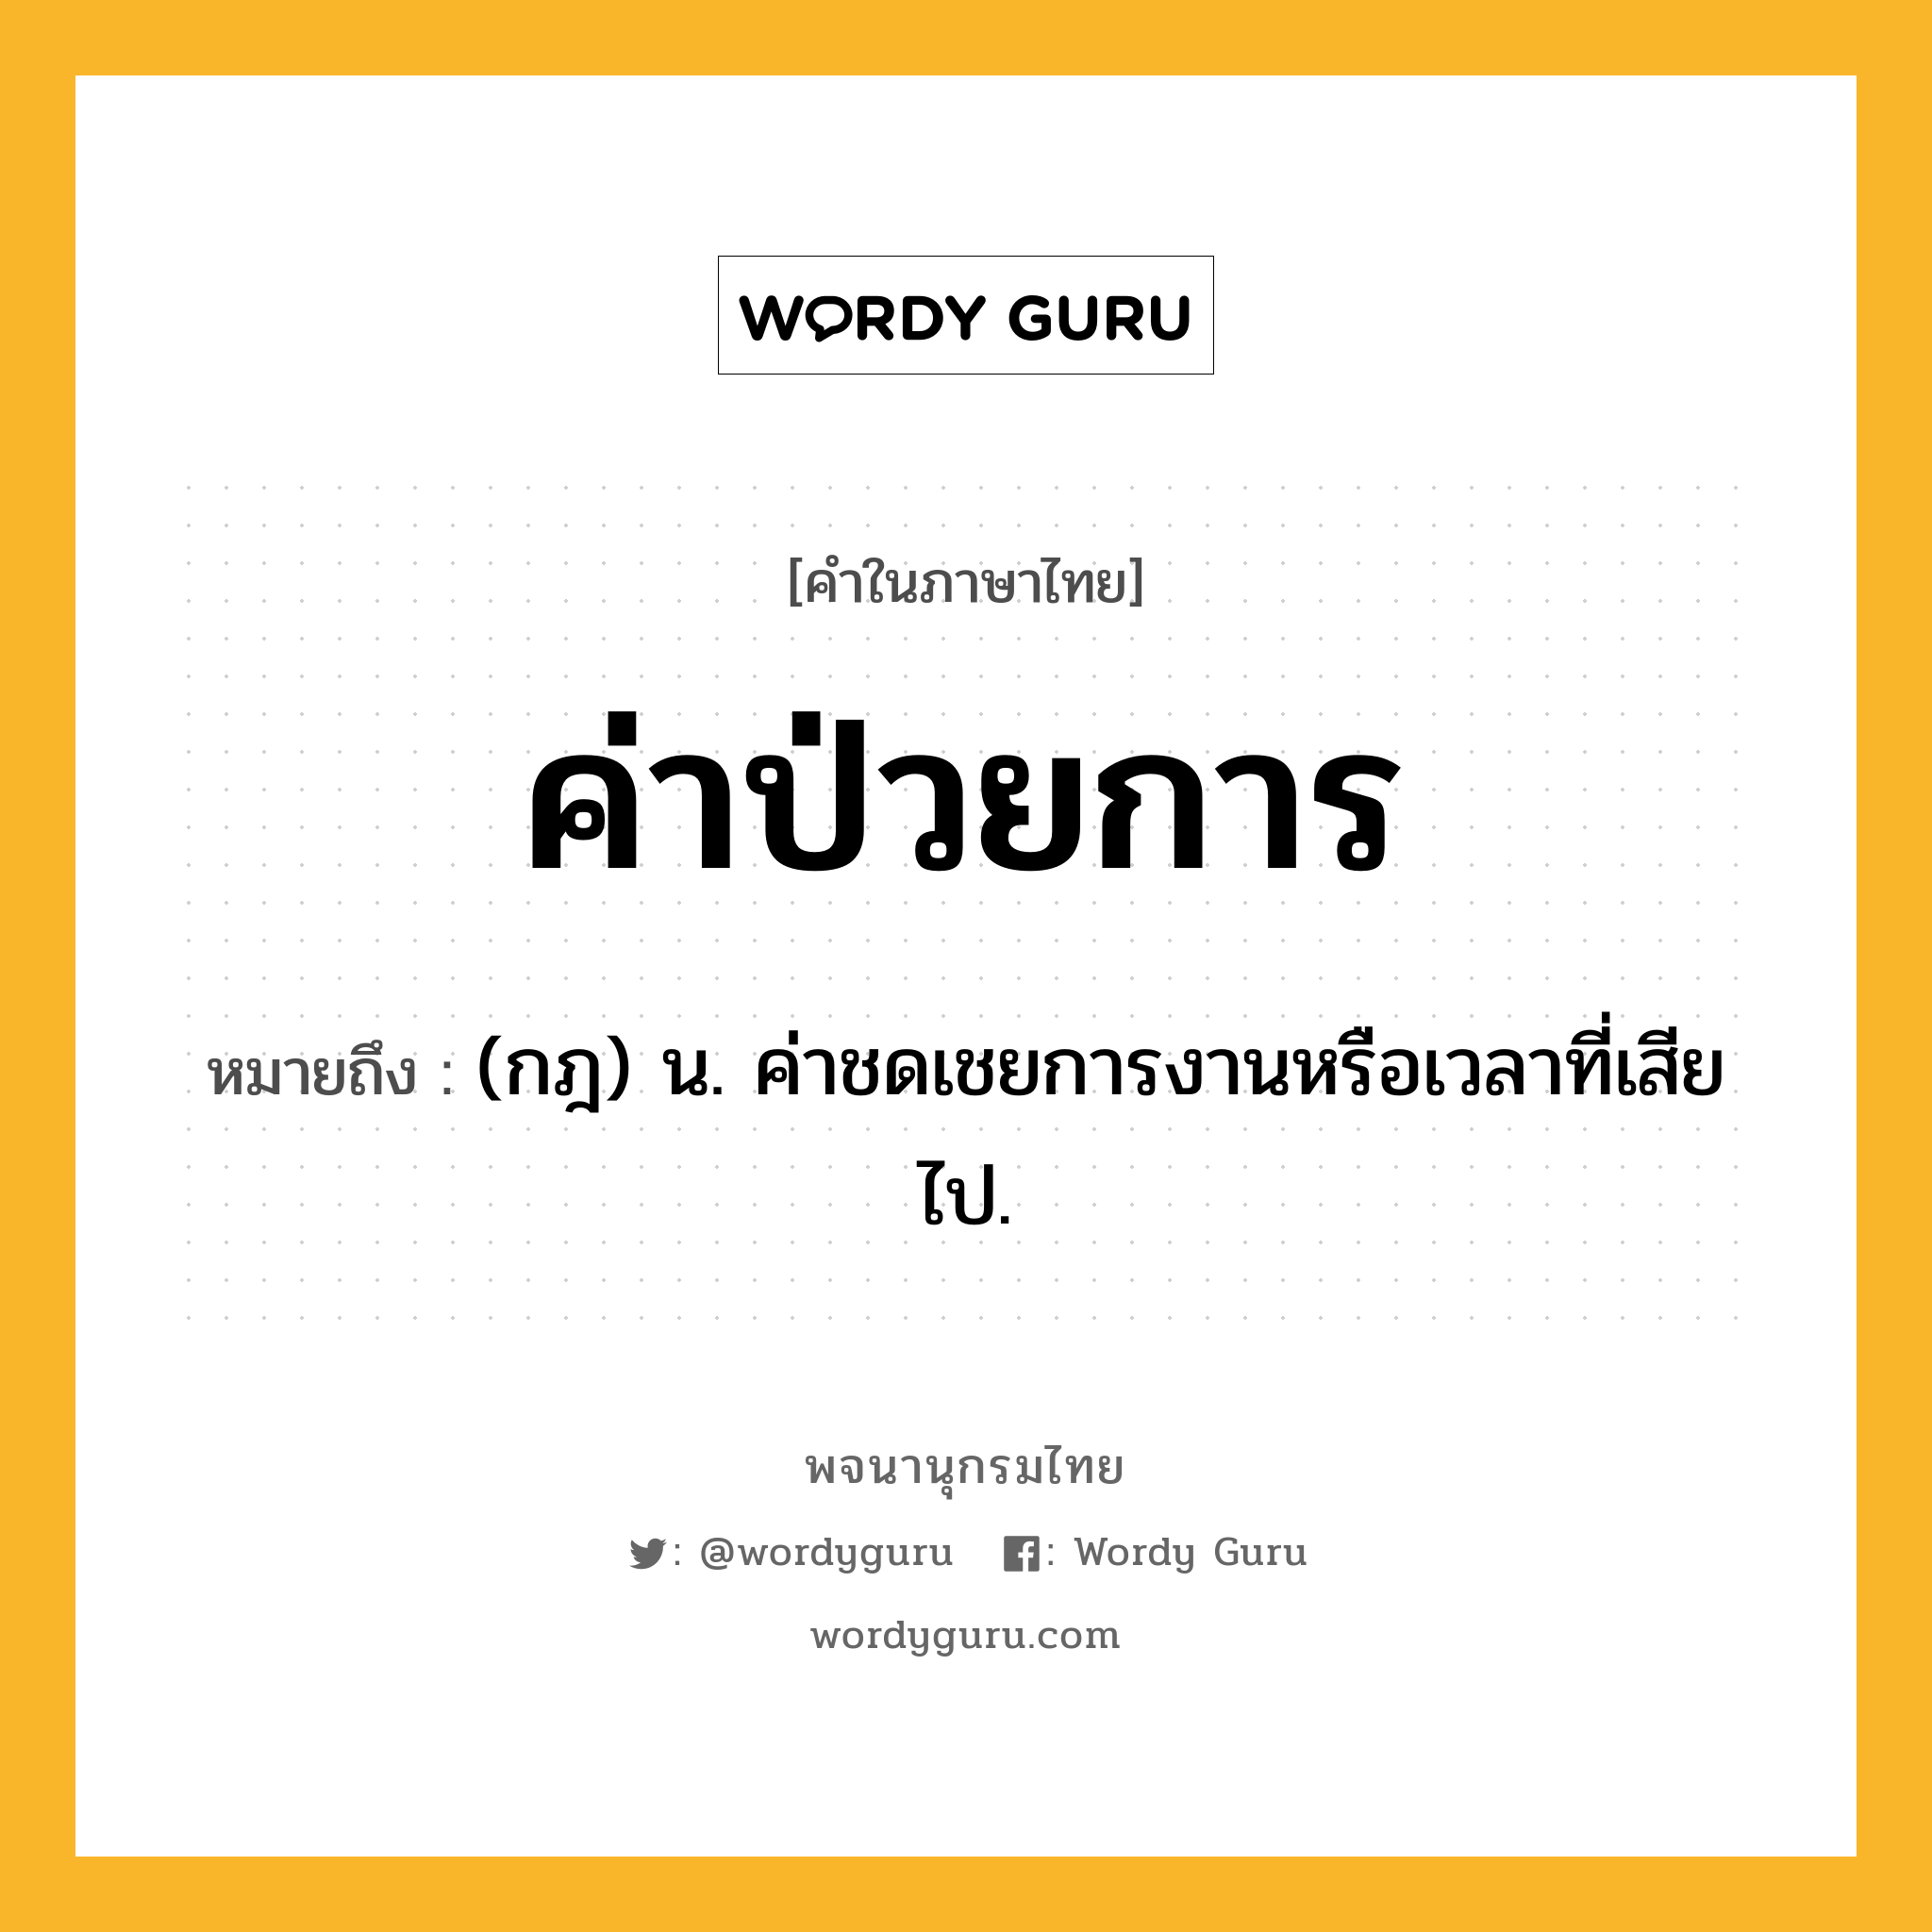 ค่าป่วยการ ความหมาย หมายถึงอะไร?, คำในภาษาไทย ค่าป่วยการ หมายถึง (กฎ) น. ค่าชดเชยการงานหรือเวลาที่เสียไป.